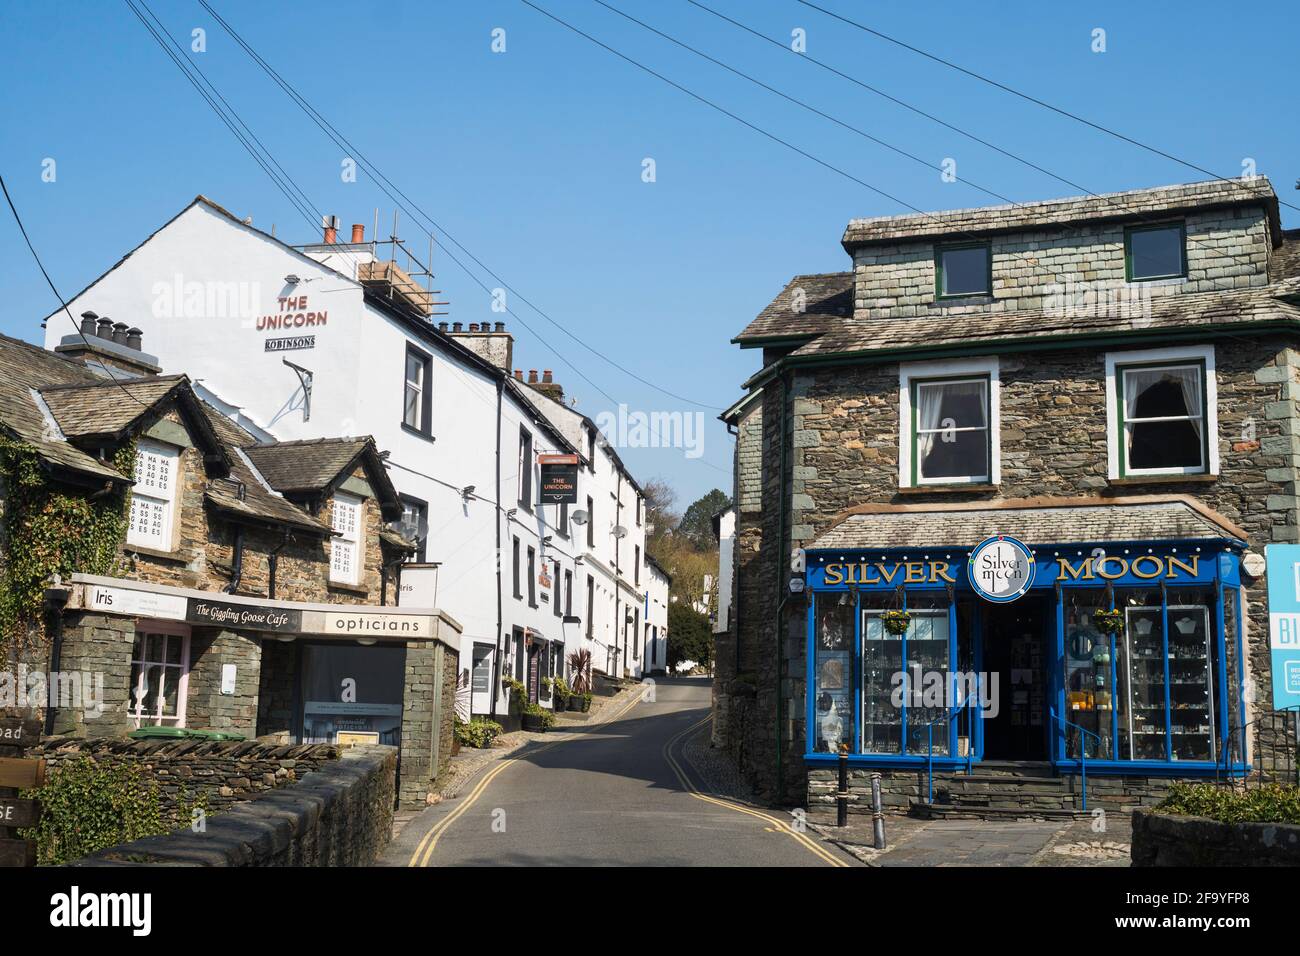 Der Edelsteinladen Silver Moon und der Unicorn Pub in North Road, Ambleside, Cumbria, England, Großbritannien Stockfoto